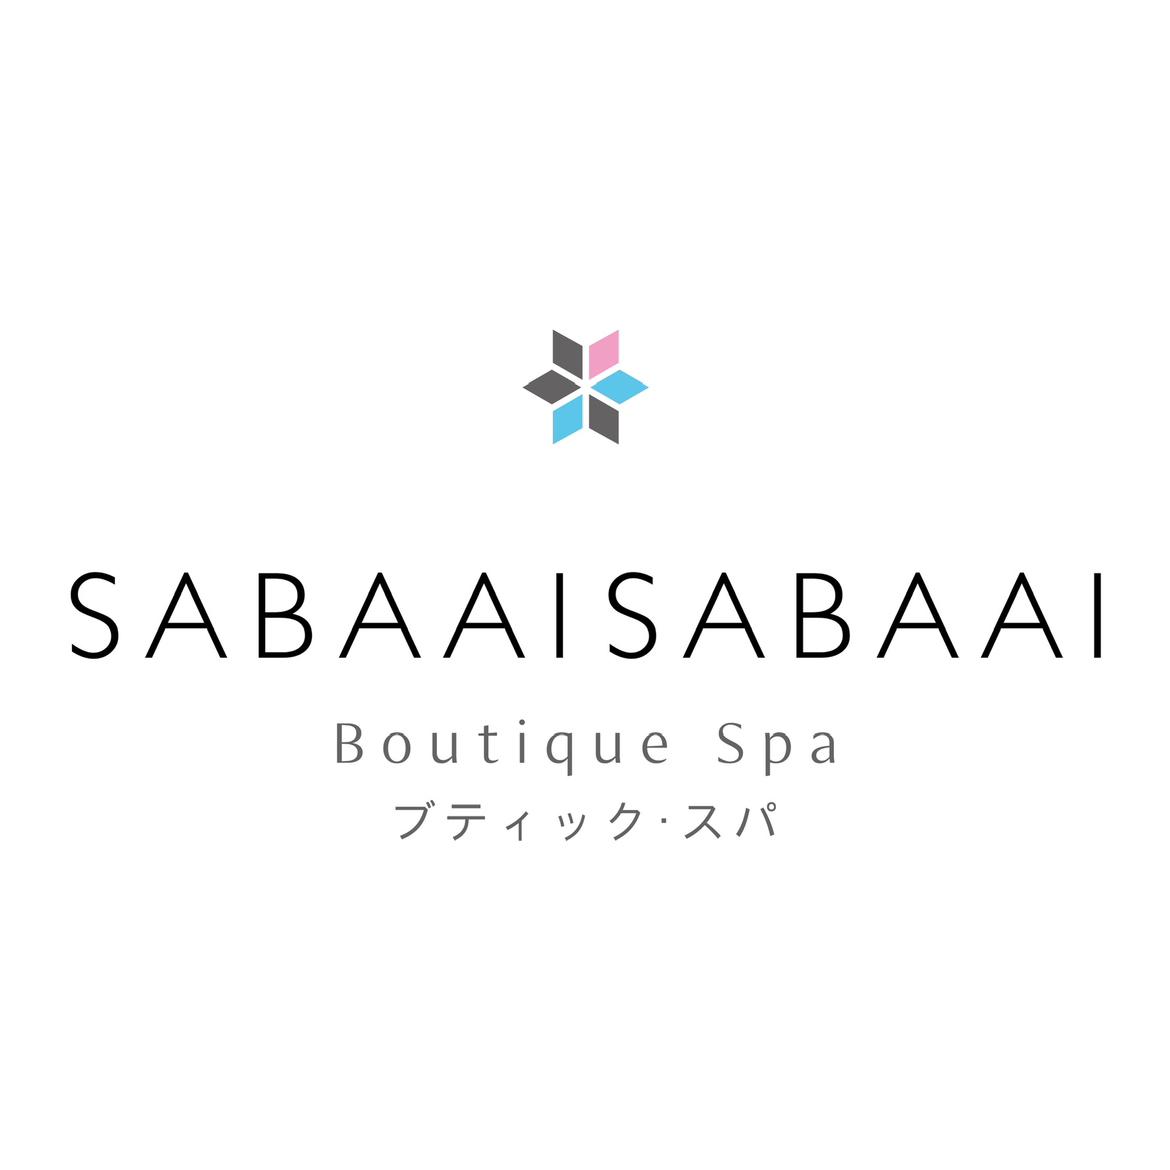 Sabaai Sabaai's images